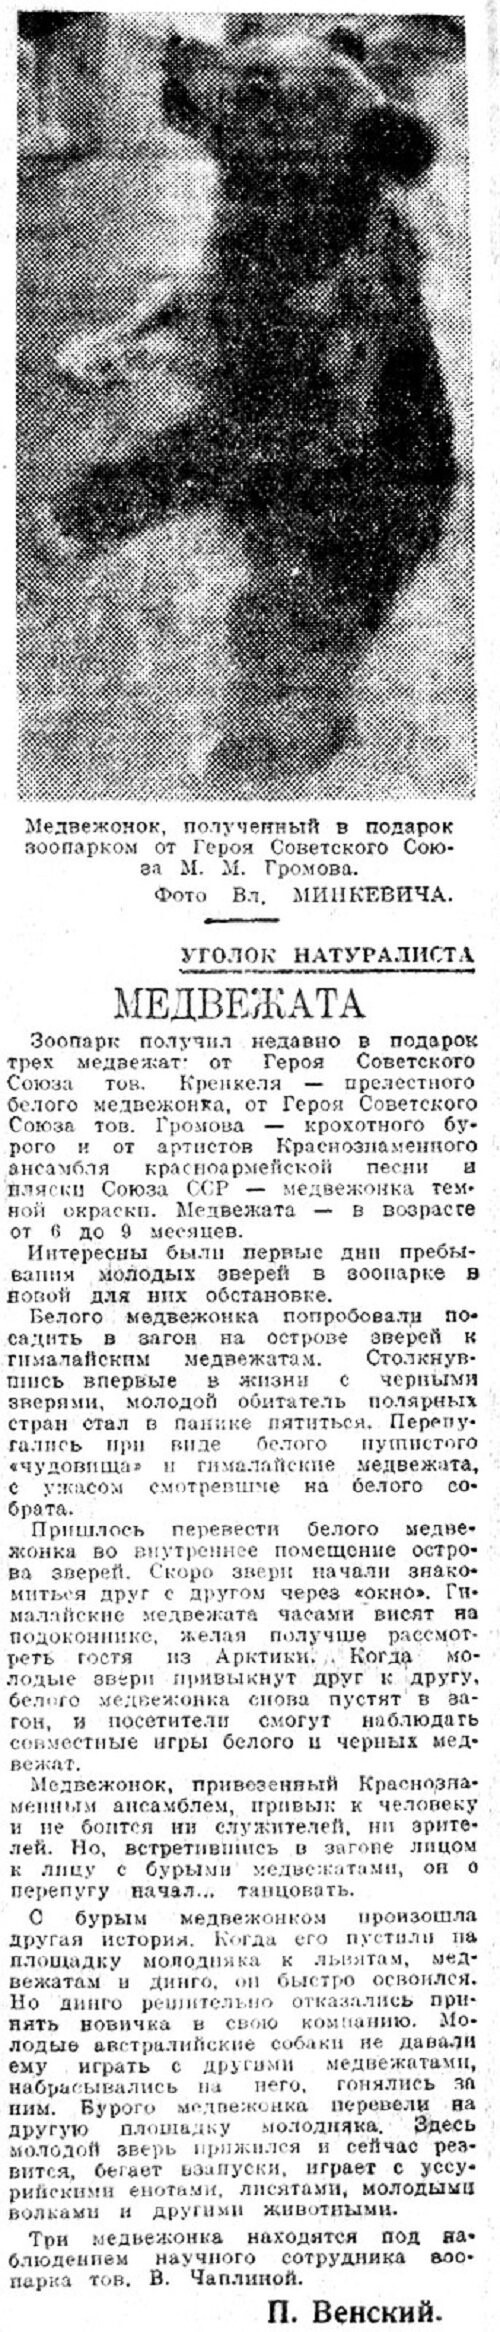 «Вечерняя Москва», 23 октября 1938 г.